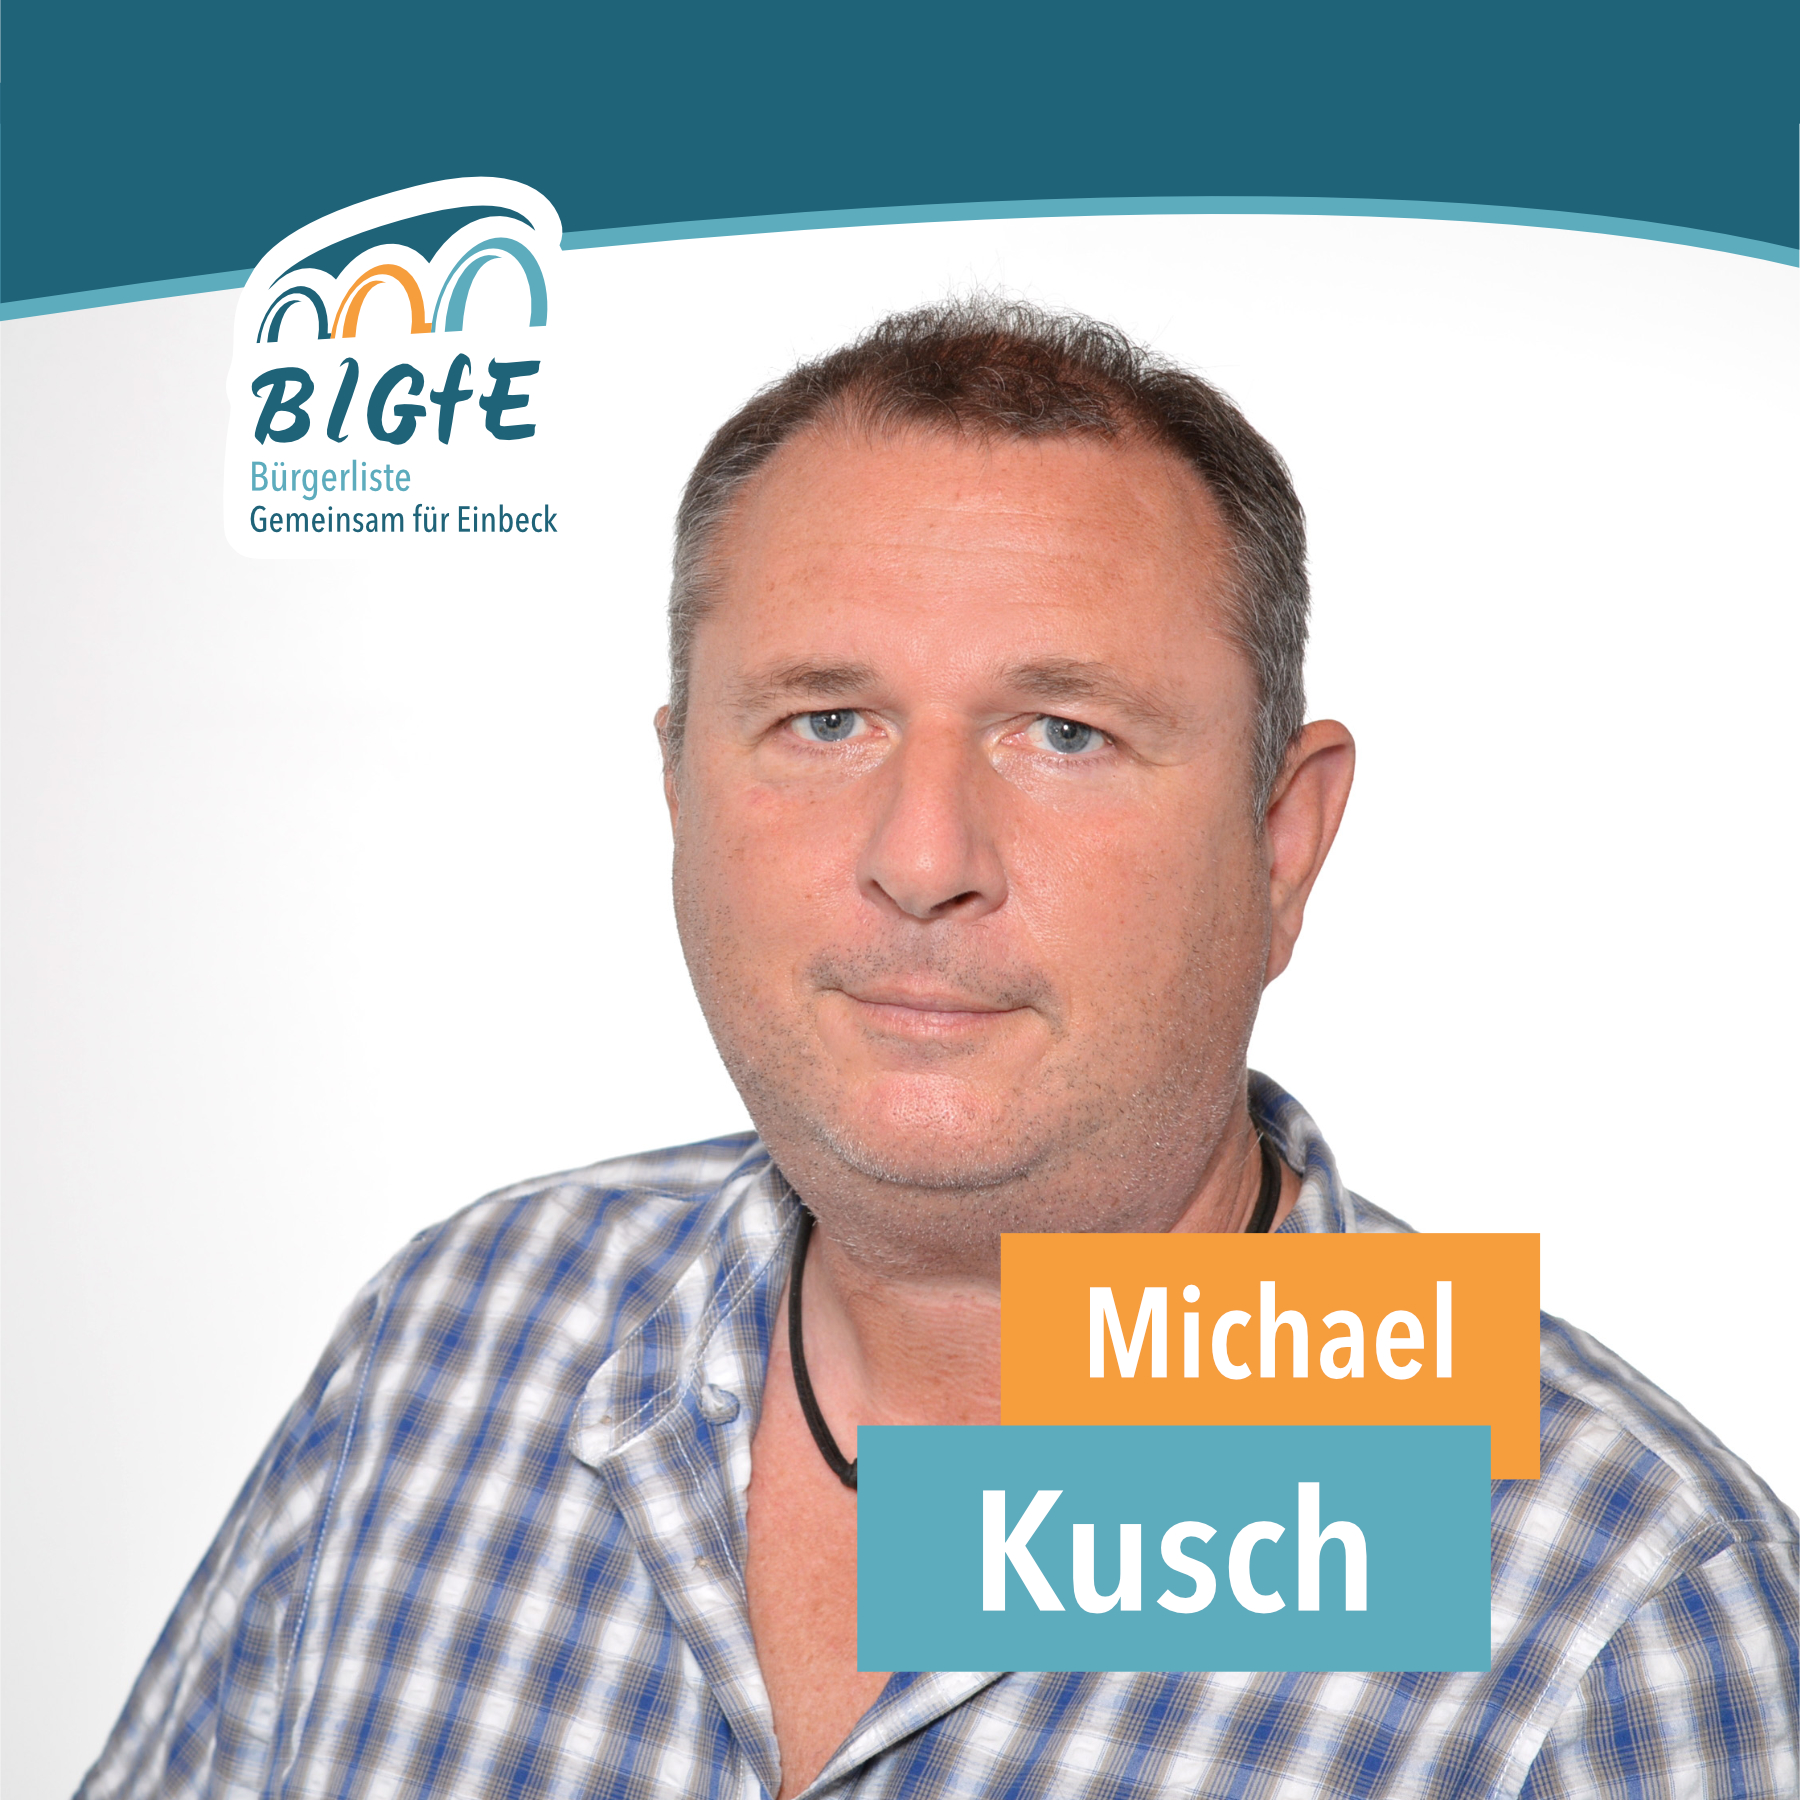 Michael Kusch